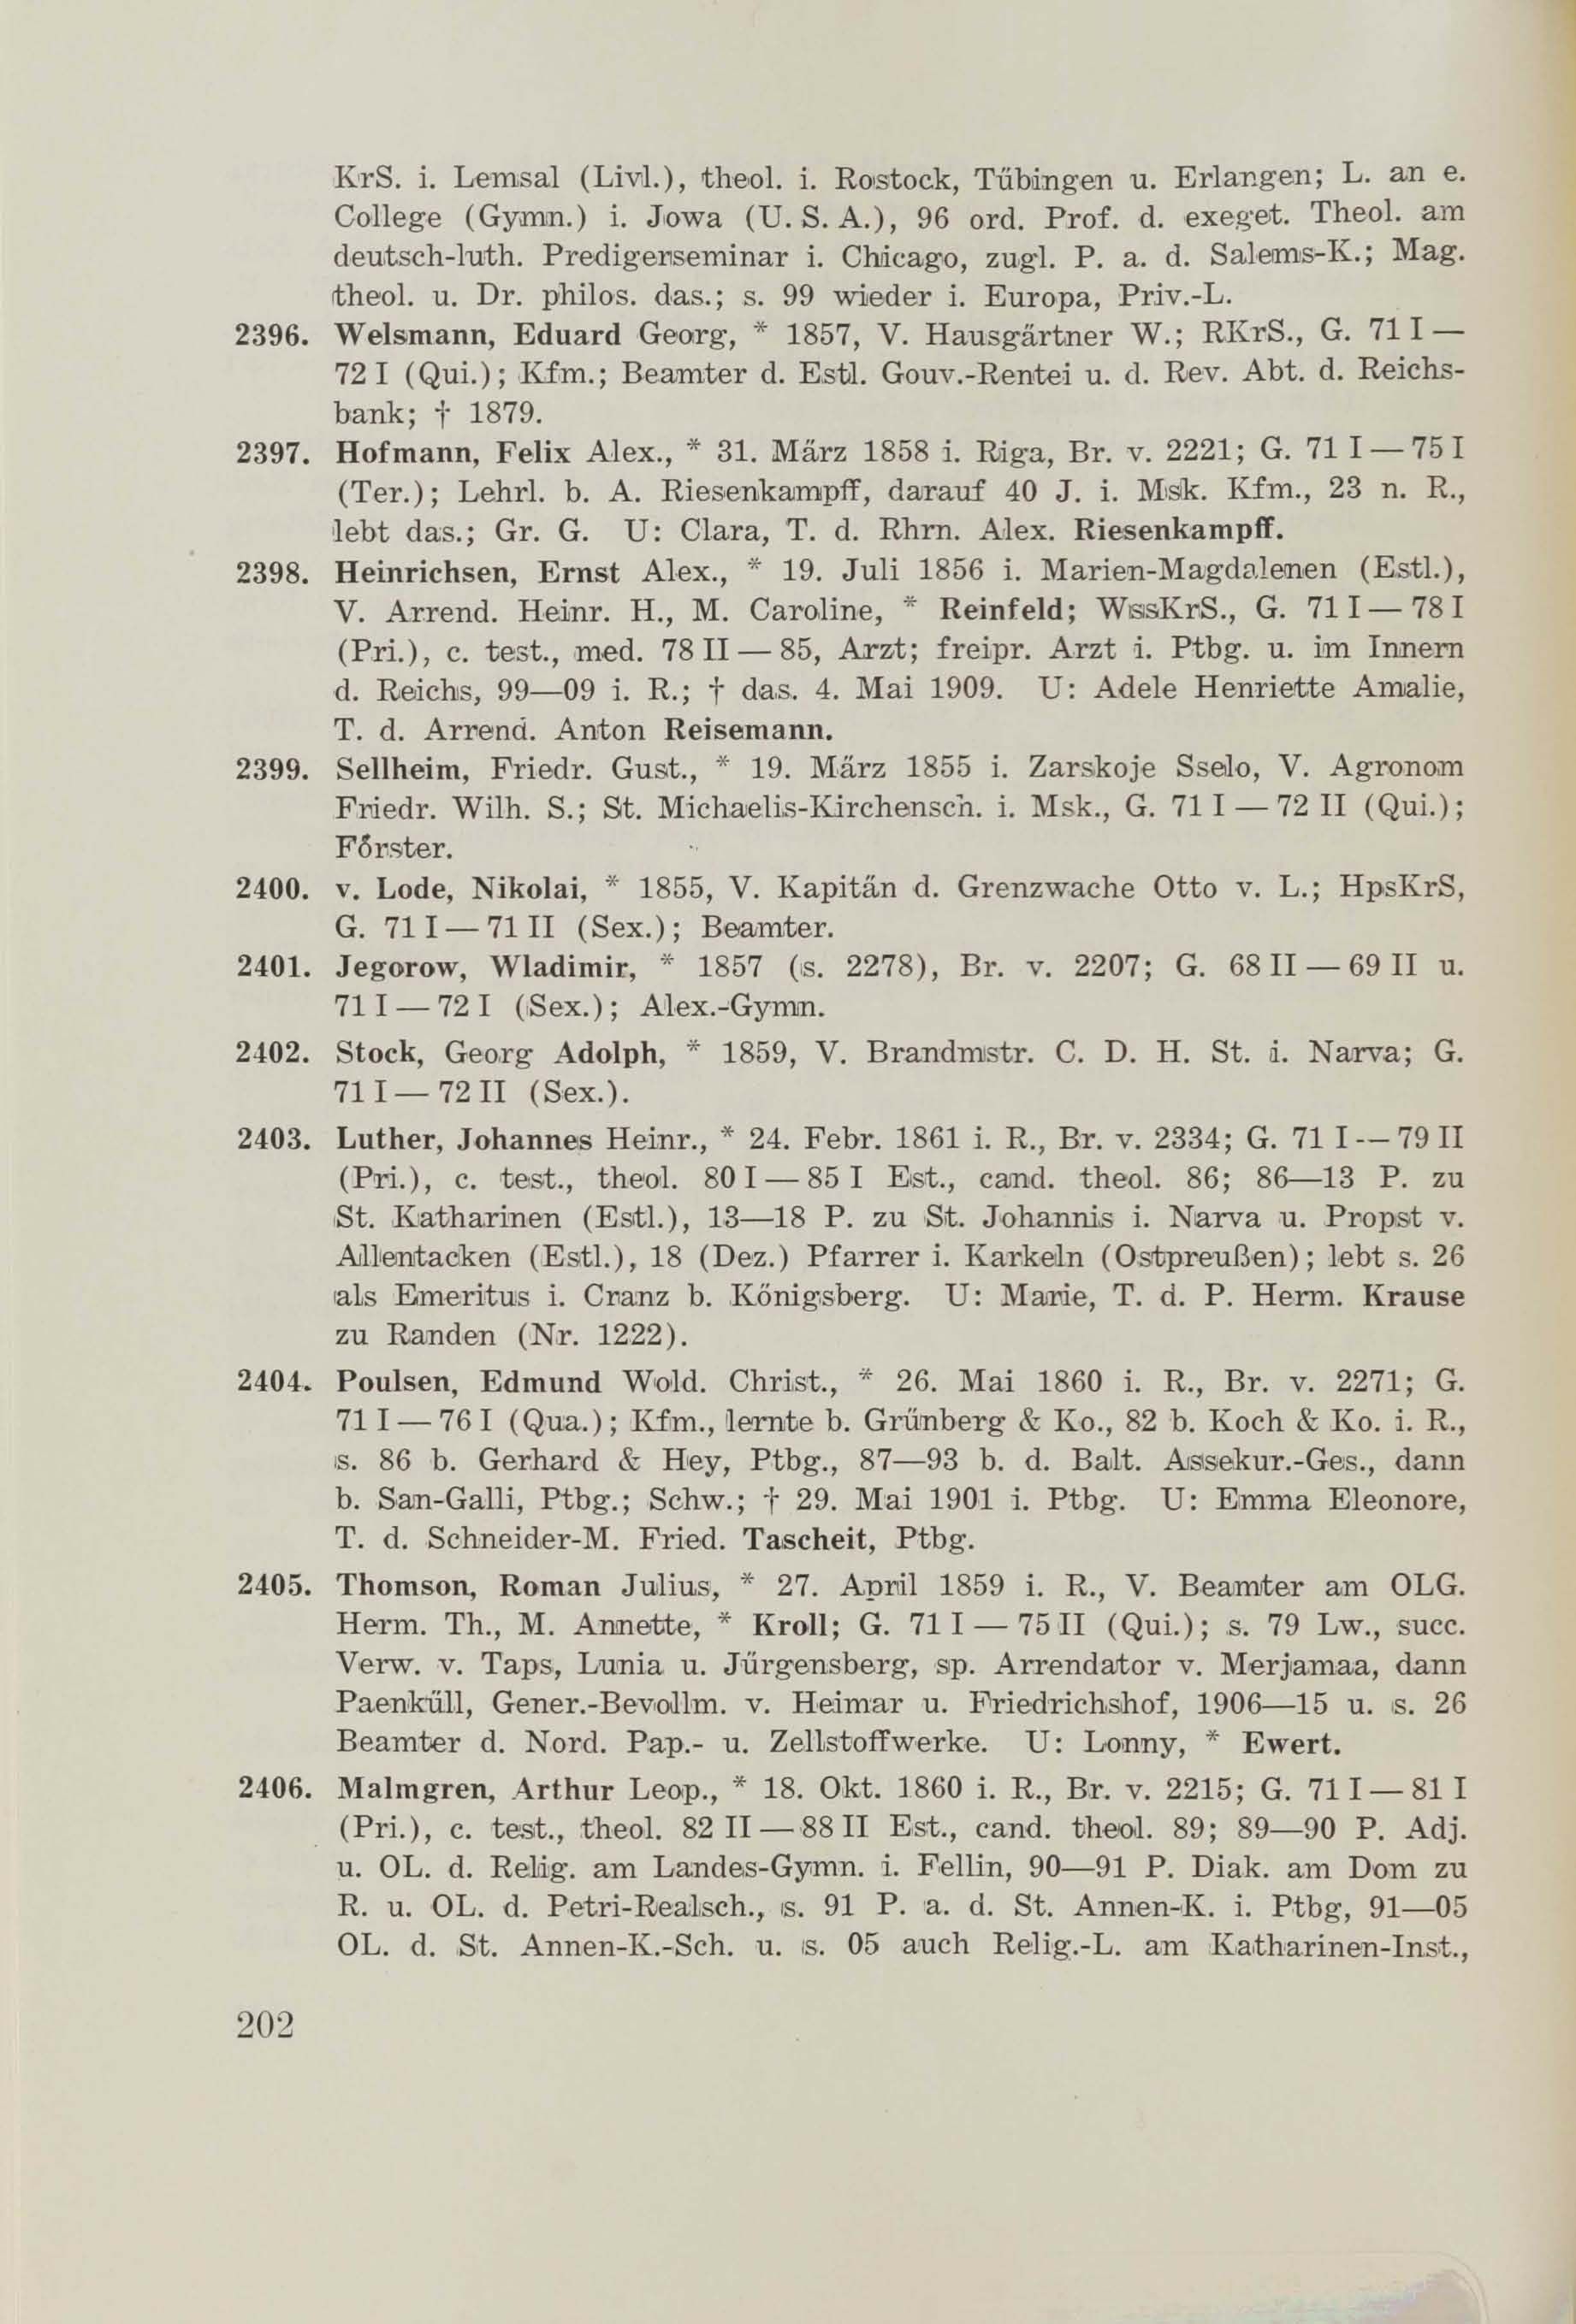 Schüler-Verzeichnis des Revalschen Gouvernements-Gymnasiums 1805–1890 (1931) | 212. (202) Main body of text